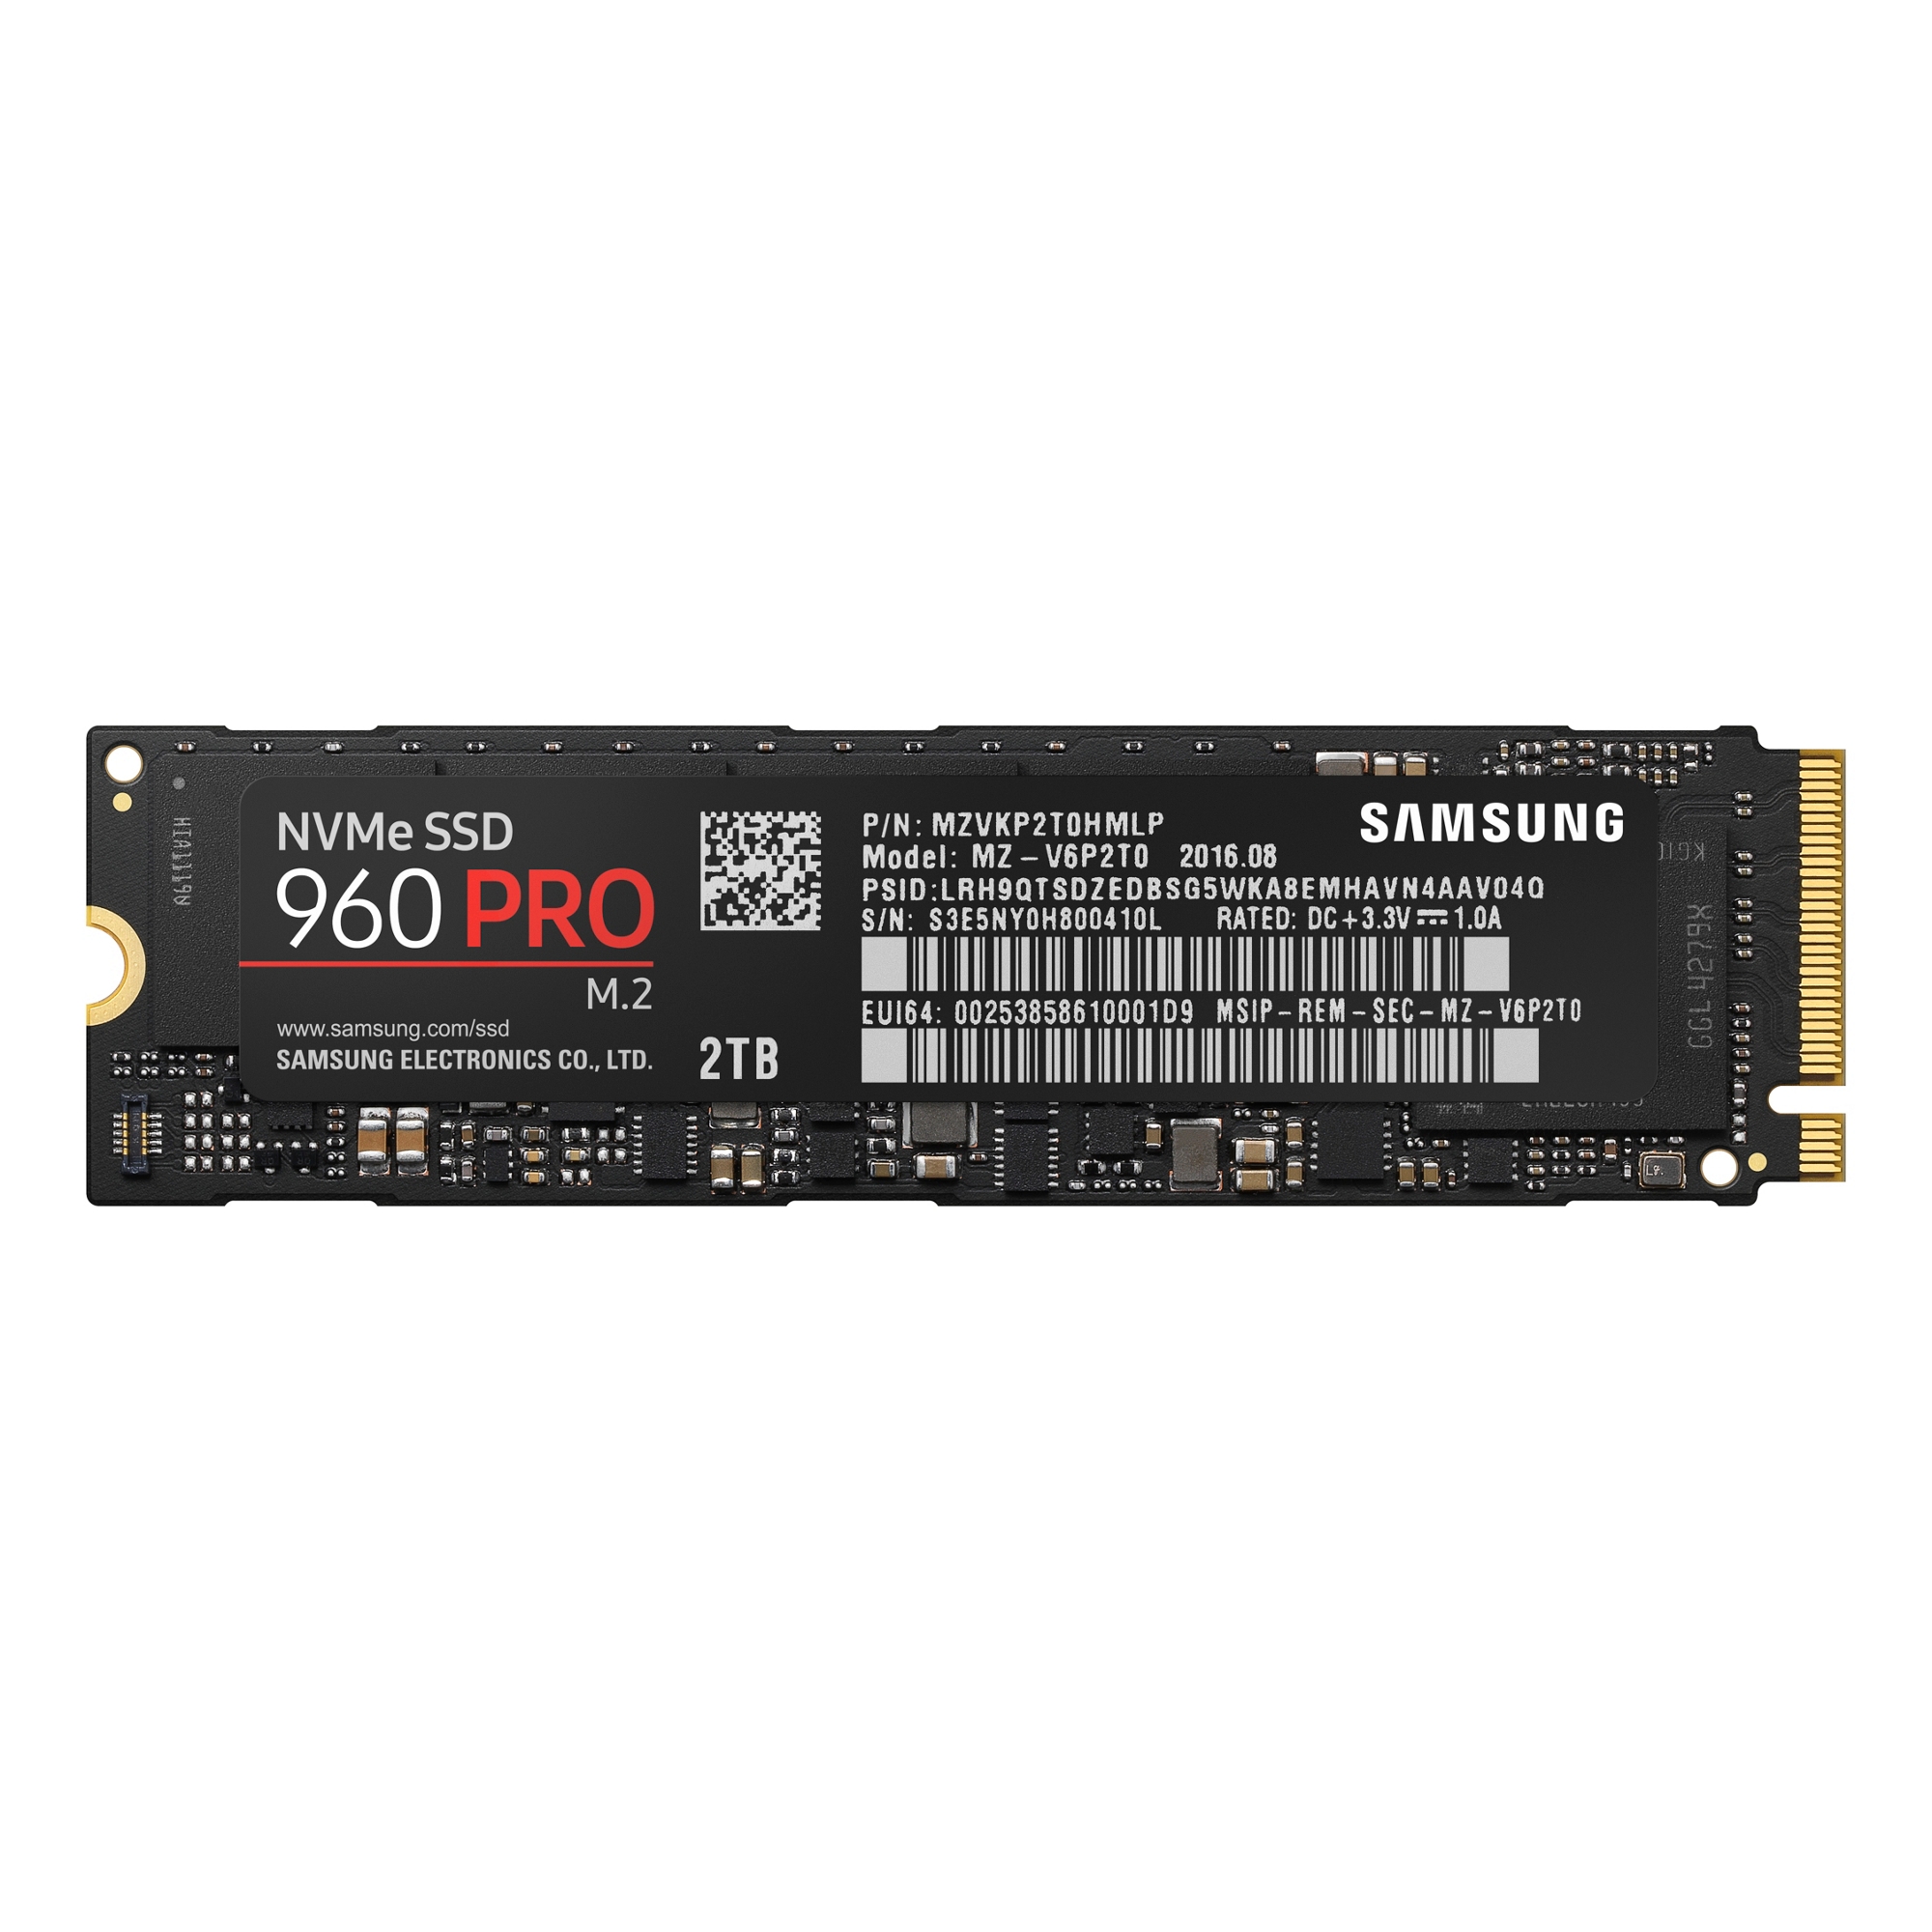 SSD 960 PRO NVMe M.2 2TB